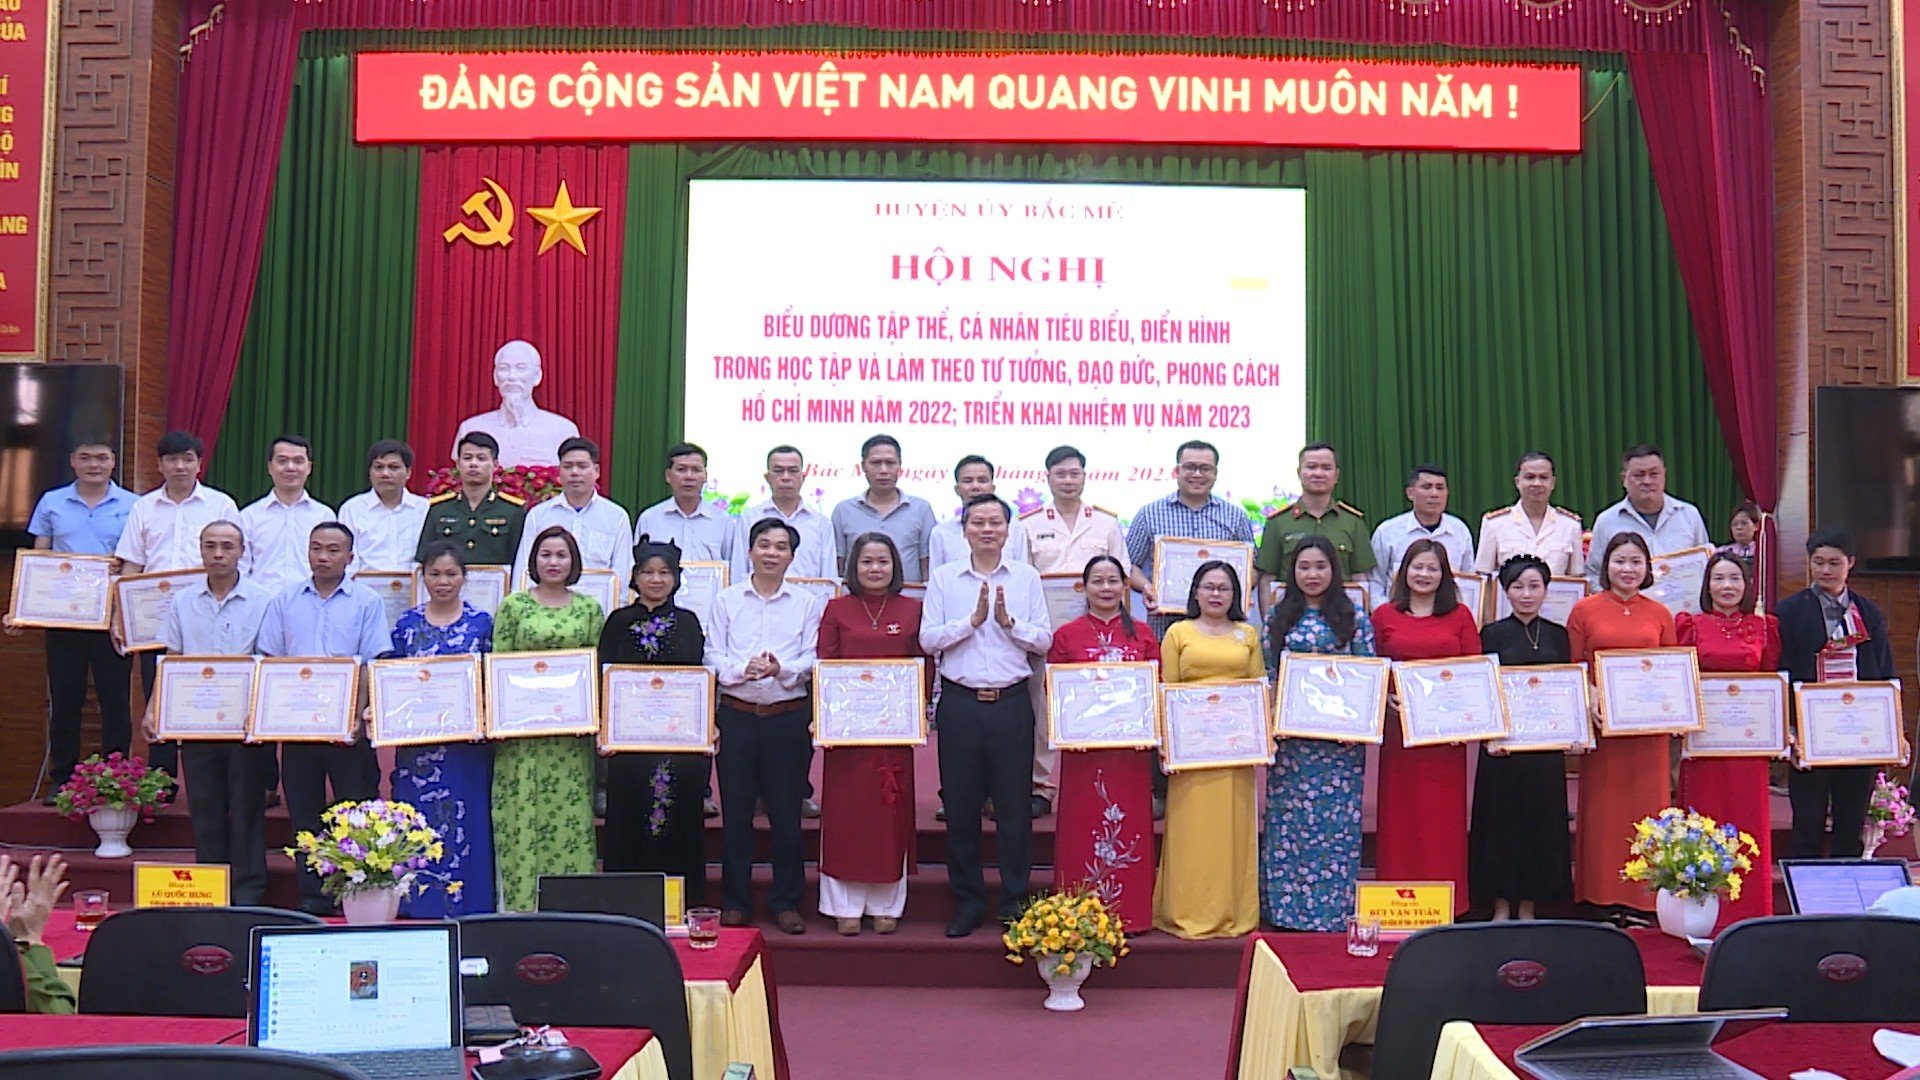 Hội nghị biểu dương tập thể, cá nhân tiêu biểu điển hình trong “Học tập và làm theo tư tưởng đạo đức, phong cách Hồ Chí Minh”